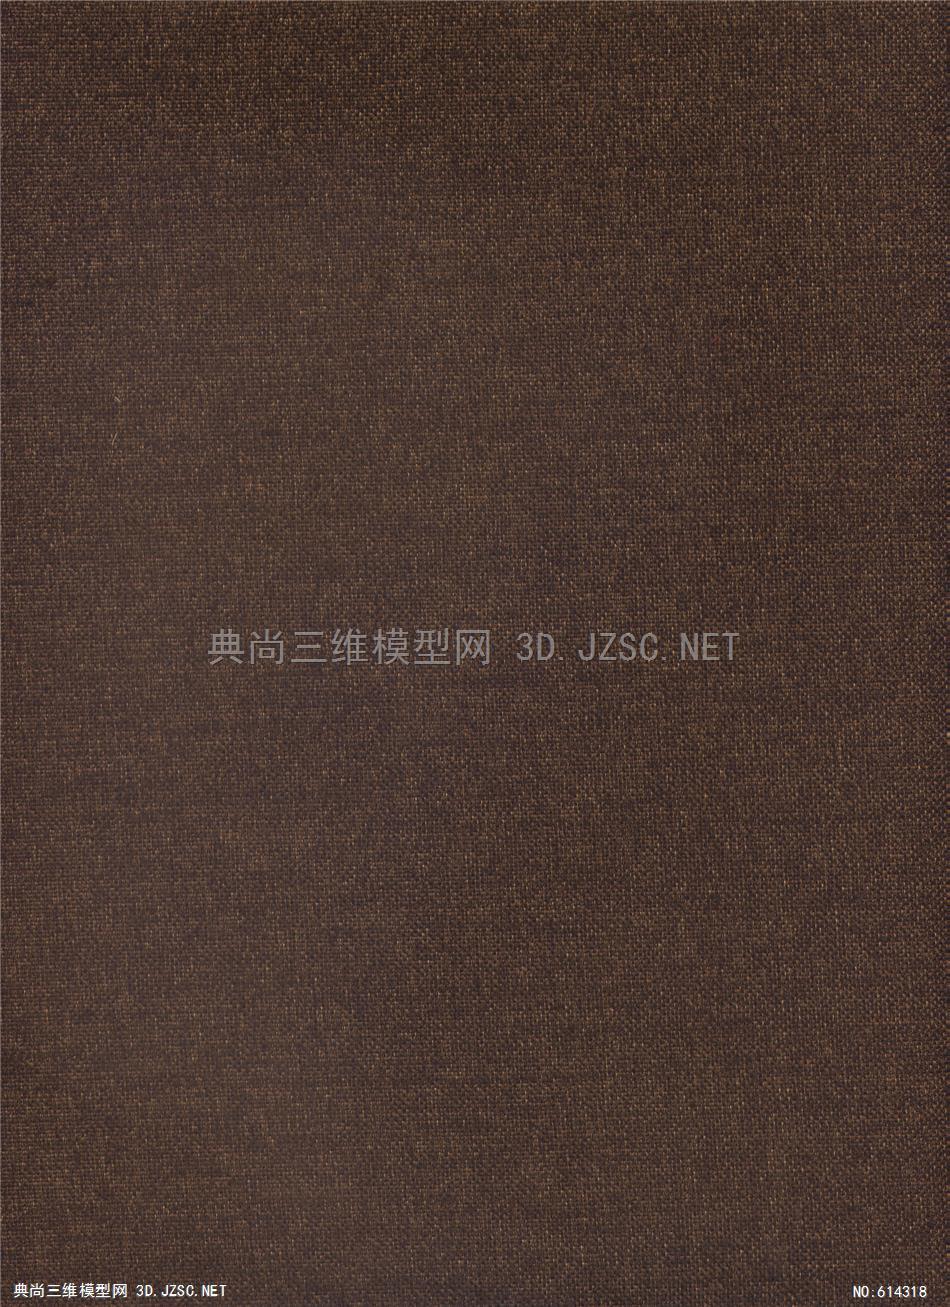 墙布 麻布 格子布 精品布纹 万能布纹 绒布 (119)